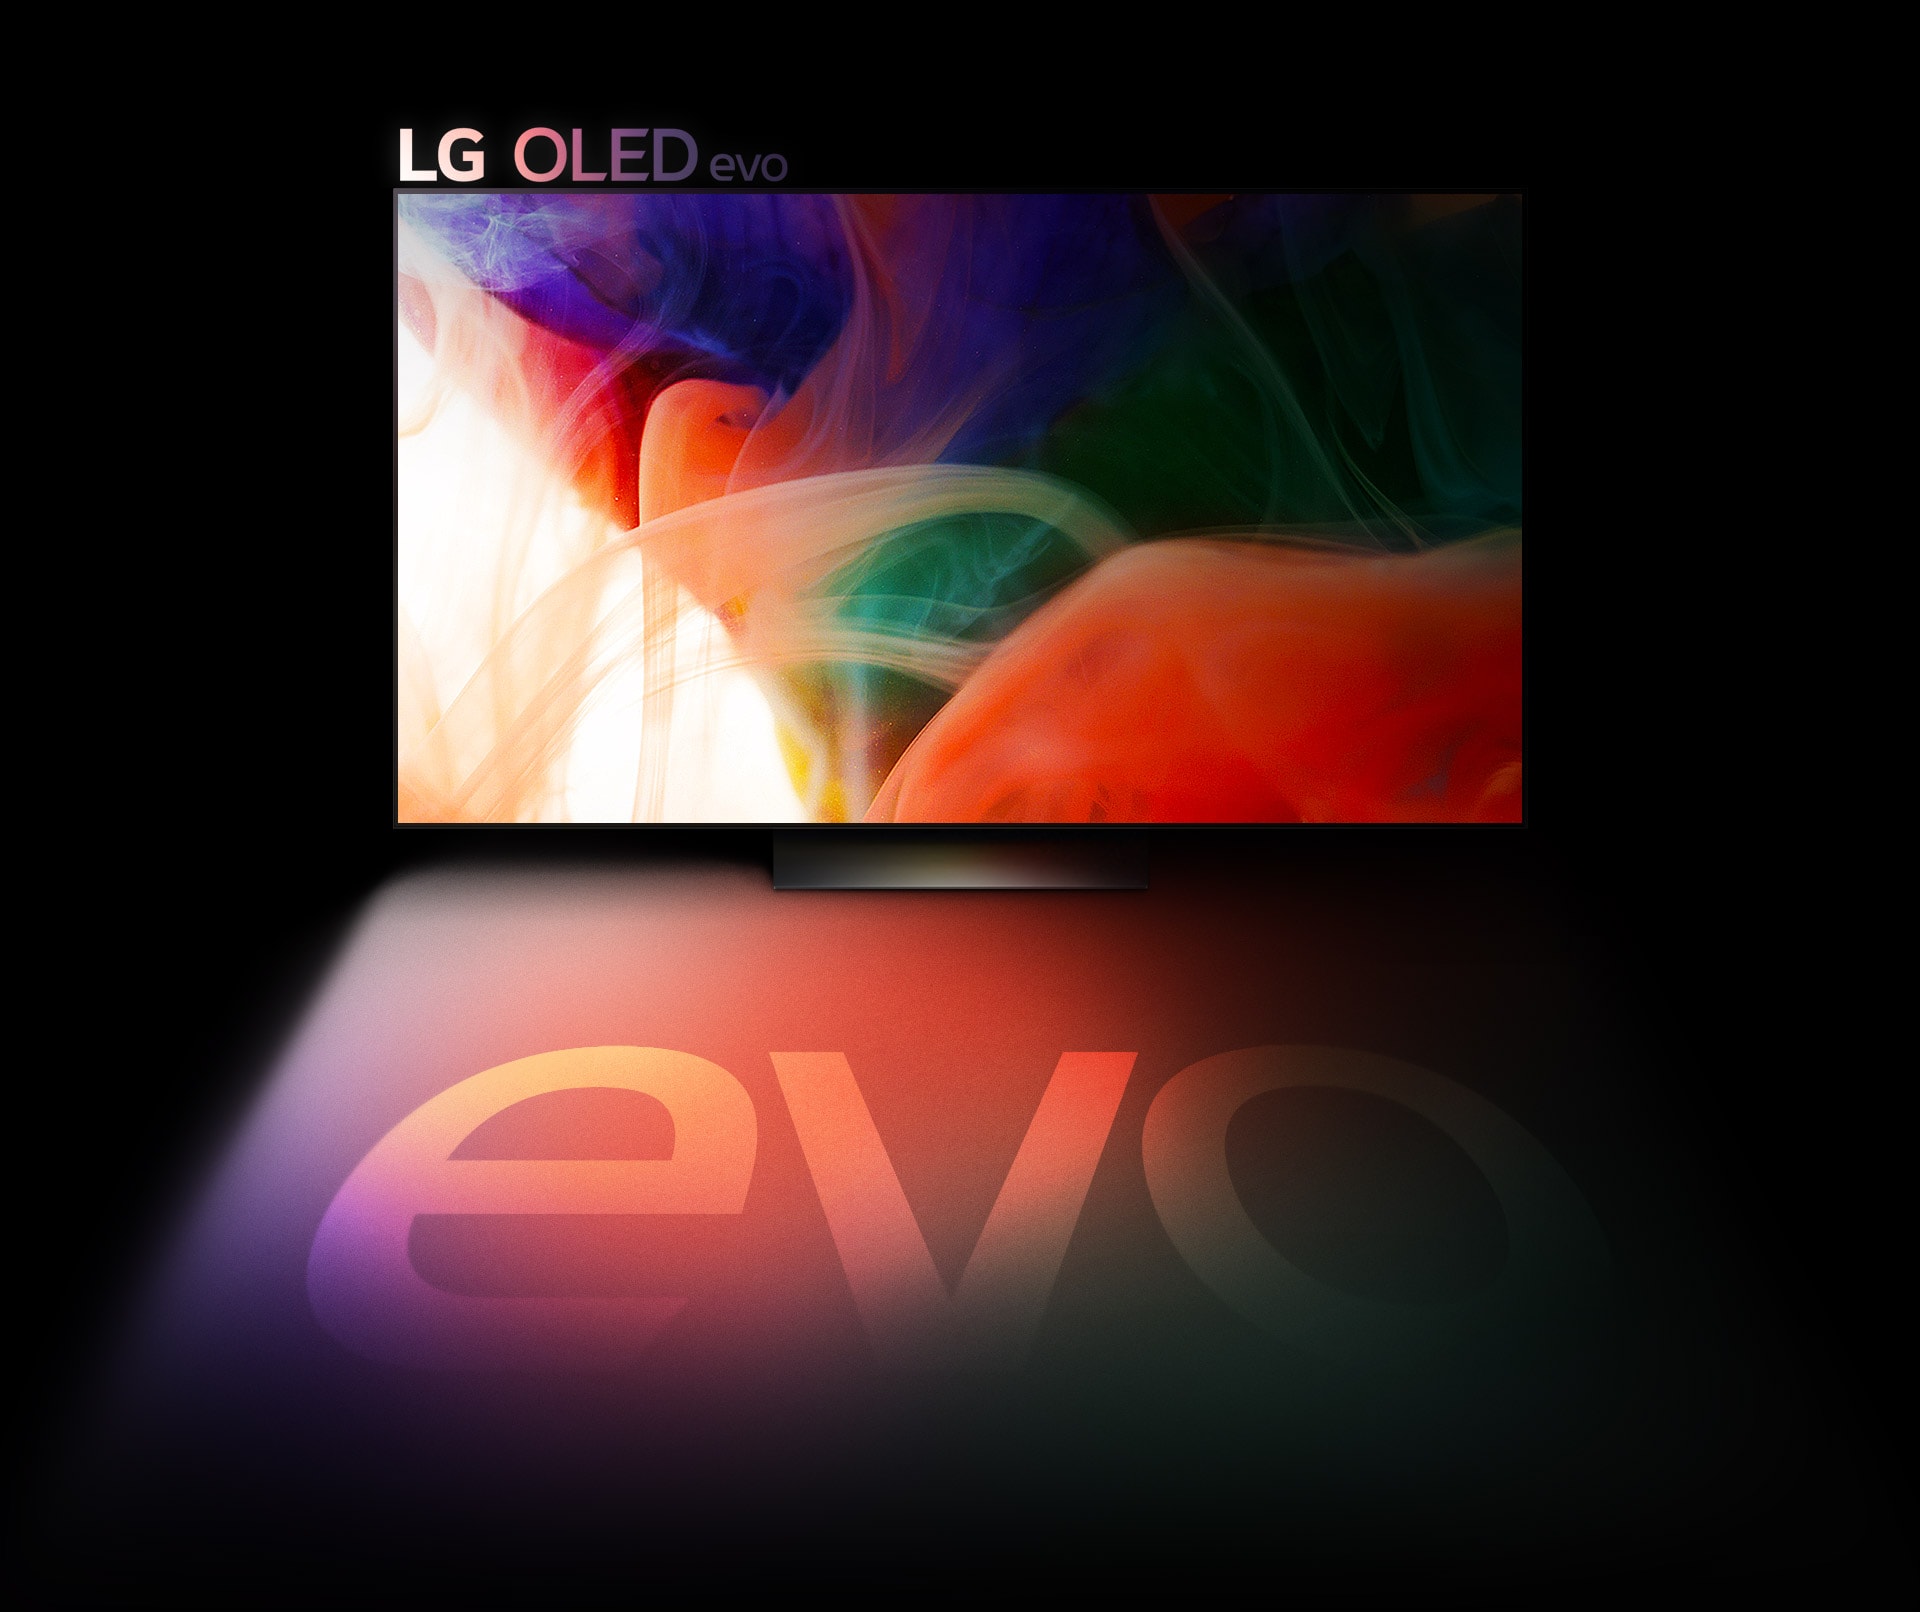 LG OLED evo televizorā redzams krāsains, abstrakts attēls